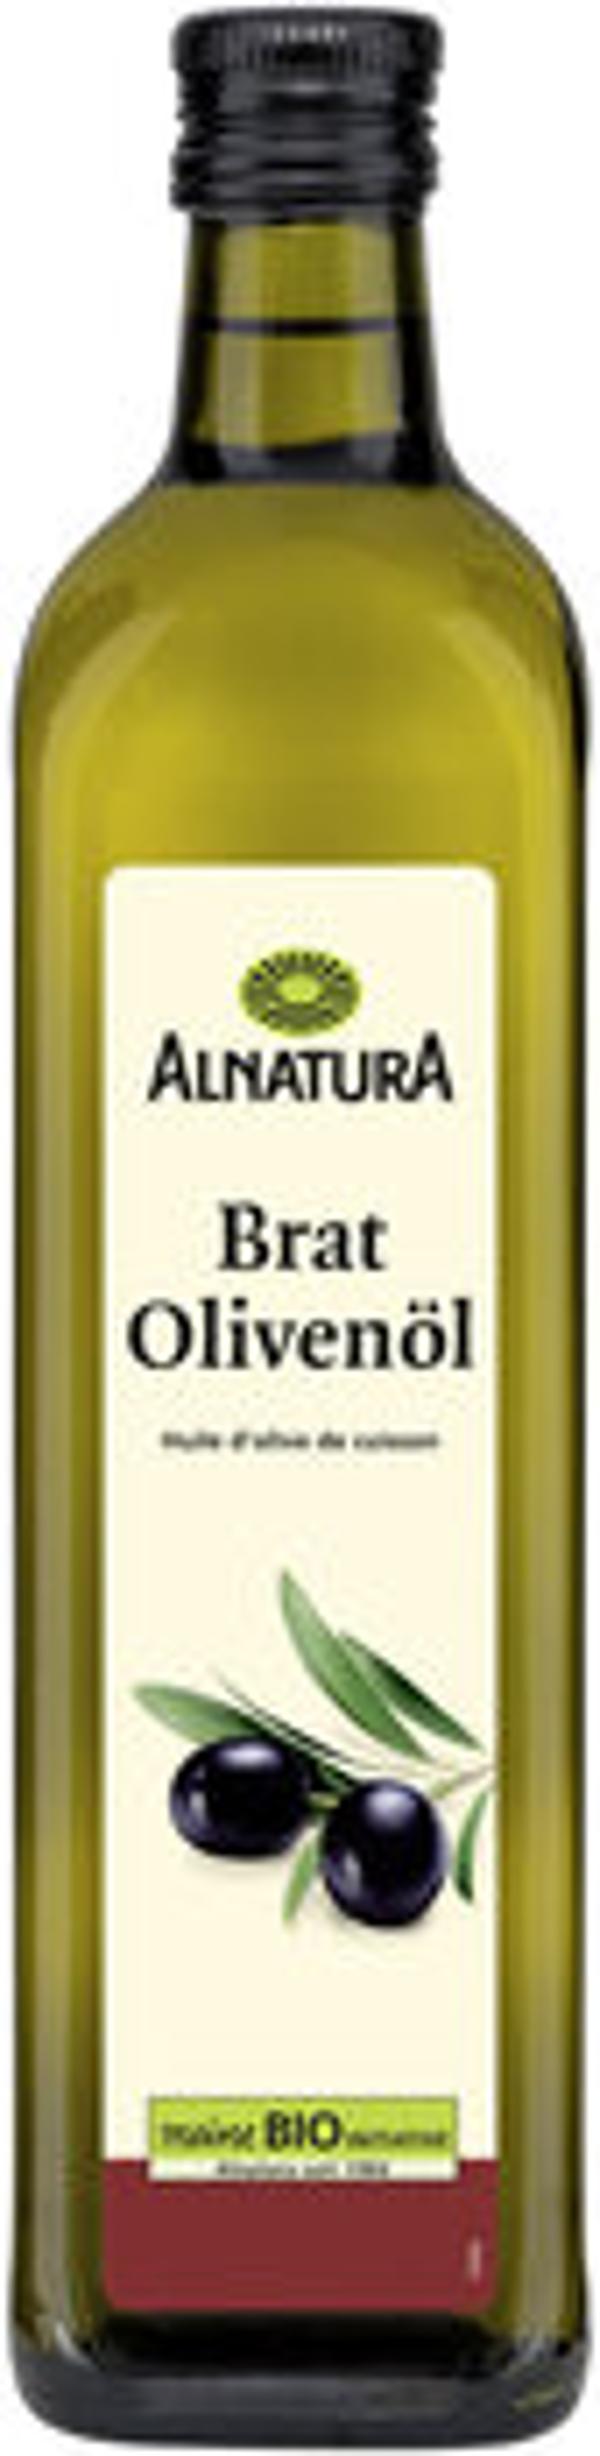 Produktbild von Alnatura Brat Olivenöl 750ml